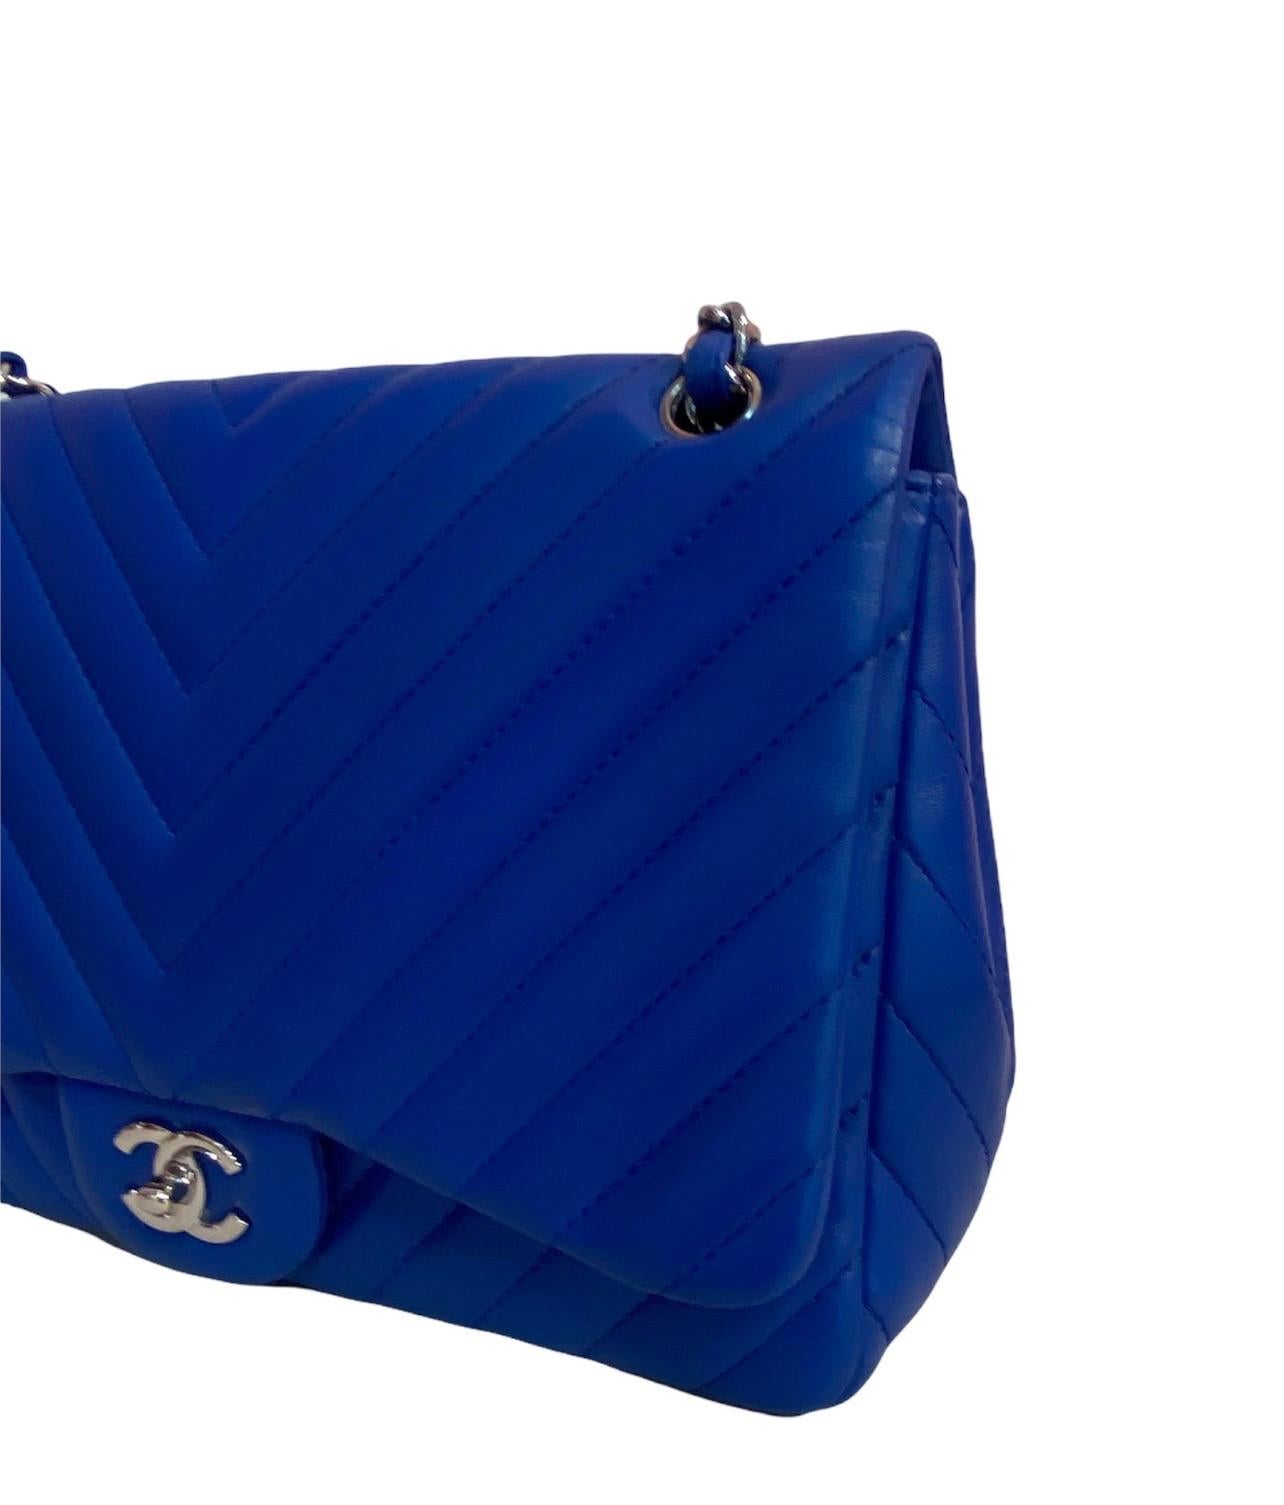 Women's Chanel Blue Leather Jumbo Bag